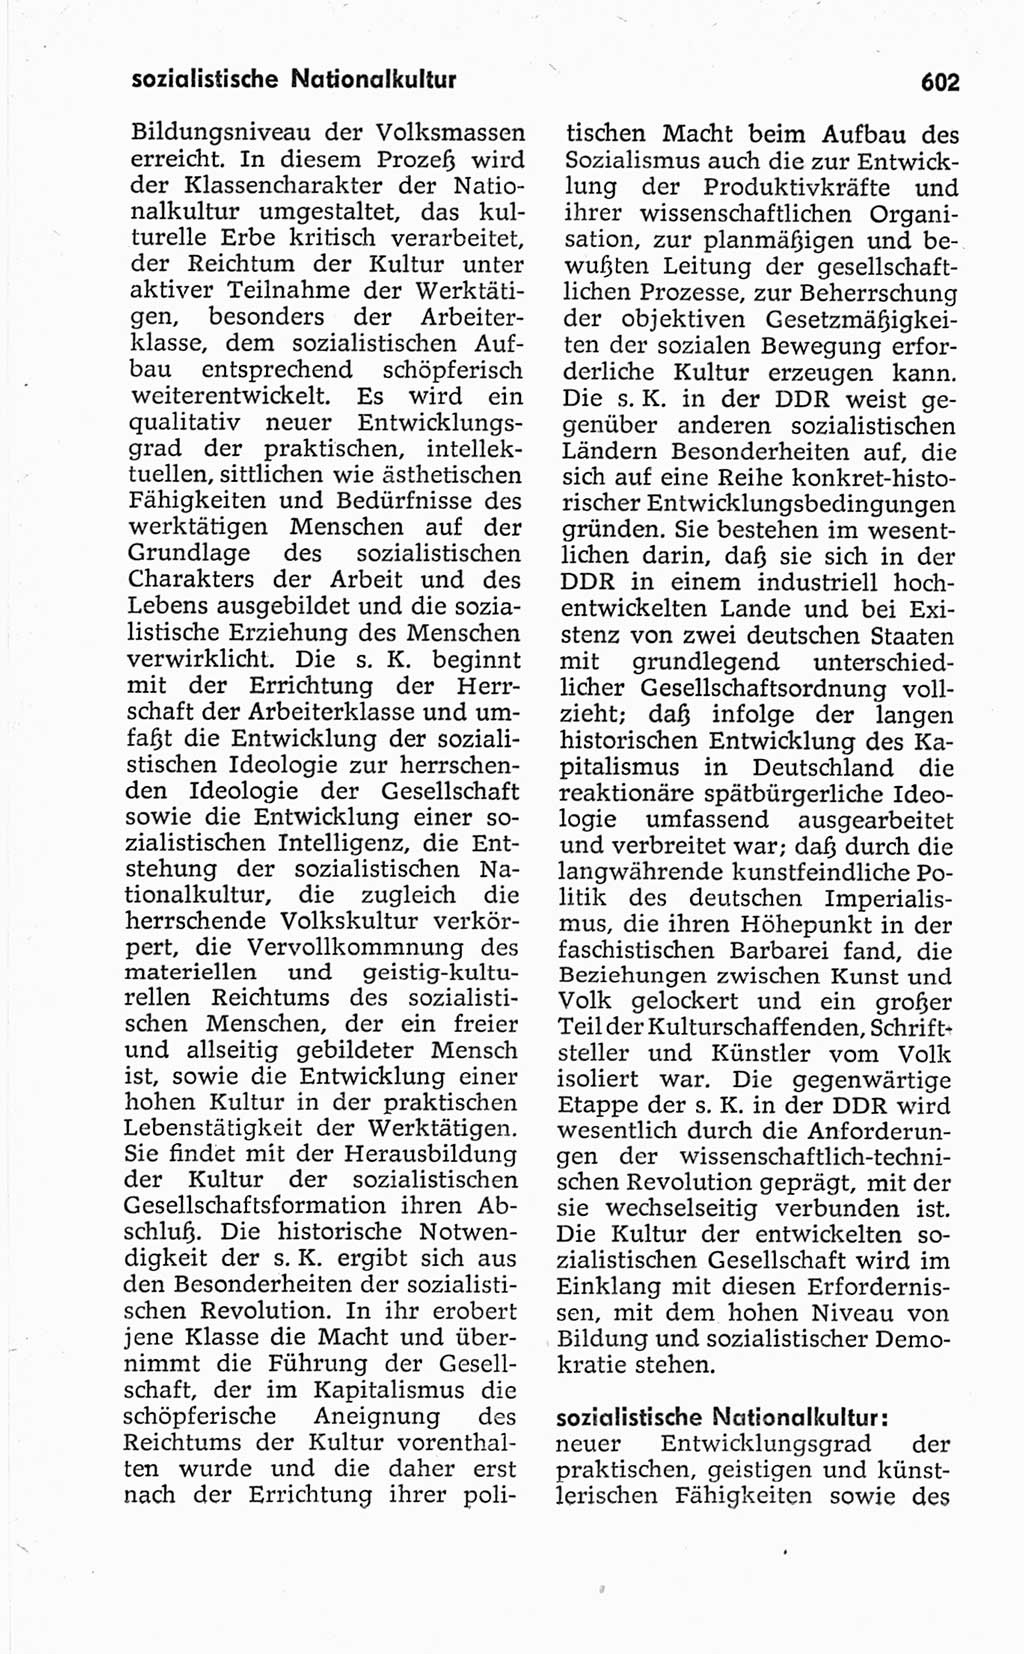 Kleines politisches Wörterbuch [Deutsche Demokratische Republik (DDR)] 1967, Seite 602 (Kl. pol. Wb. DDR 1967, S. 602)